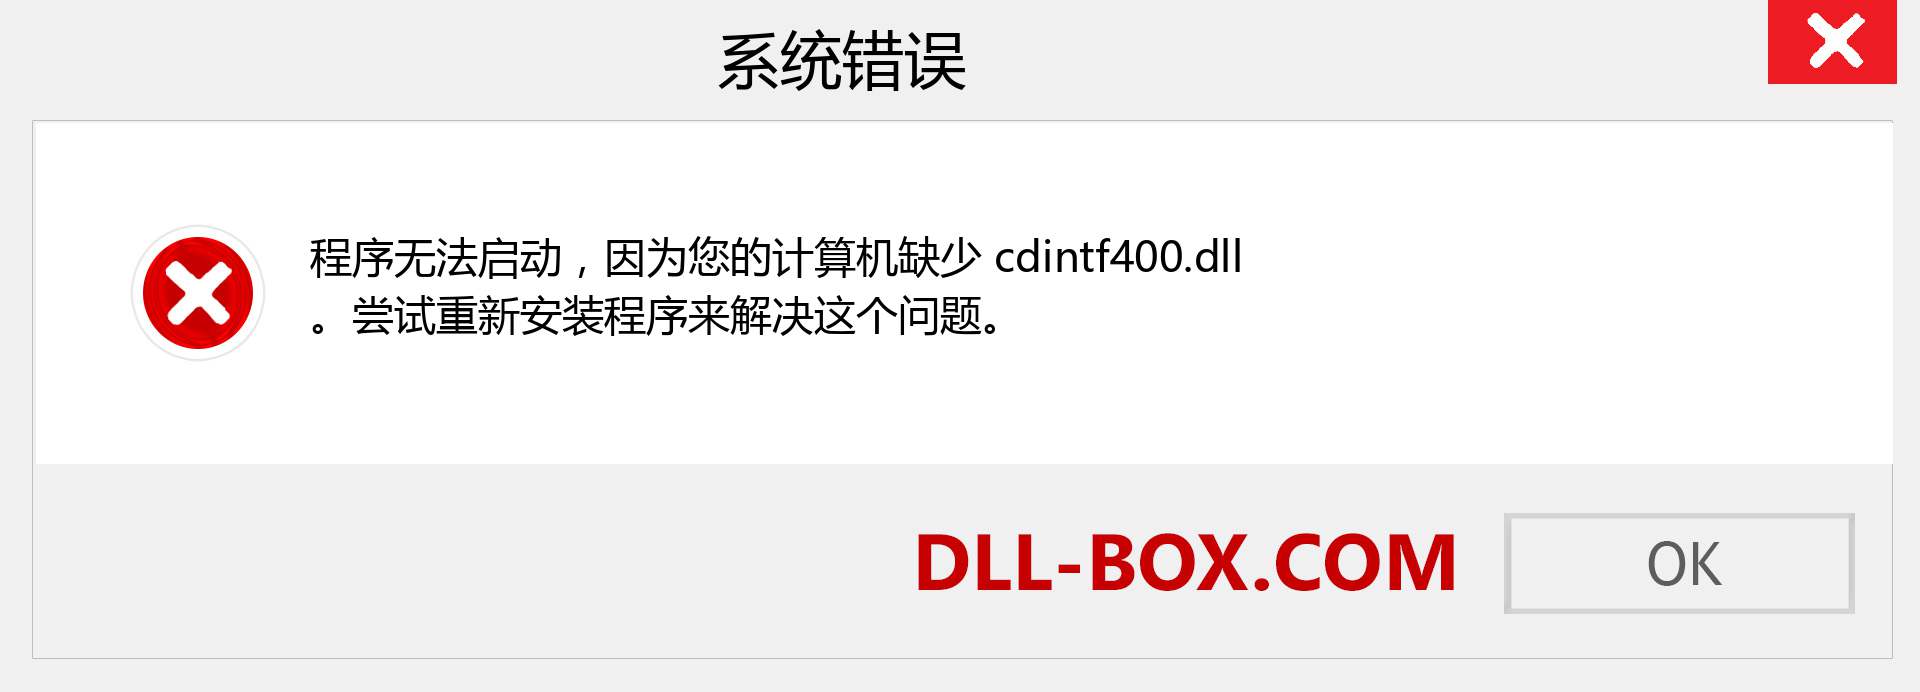 cdintf400.dll 文件丢失？。 适用于 Windows 7、8、10 的下载 - 修复 Windows、照片、图像上的 cdintf400 dll 丢失错误